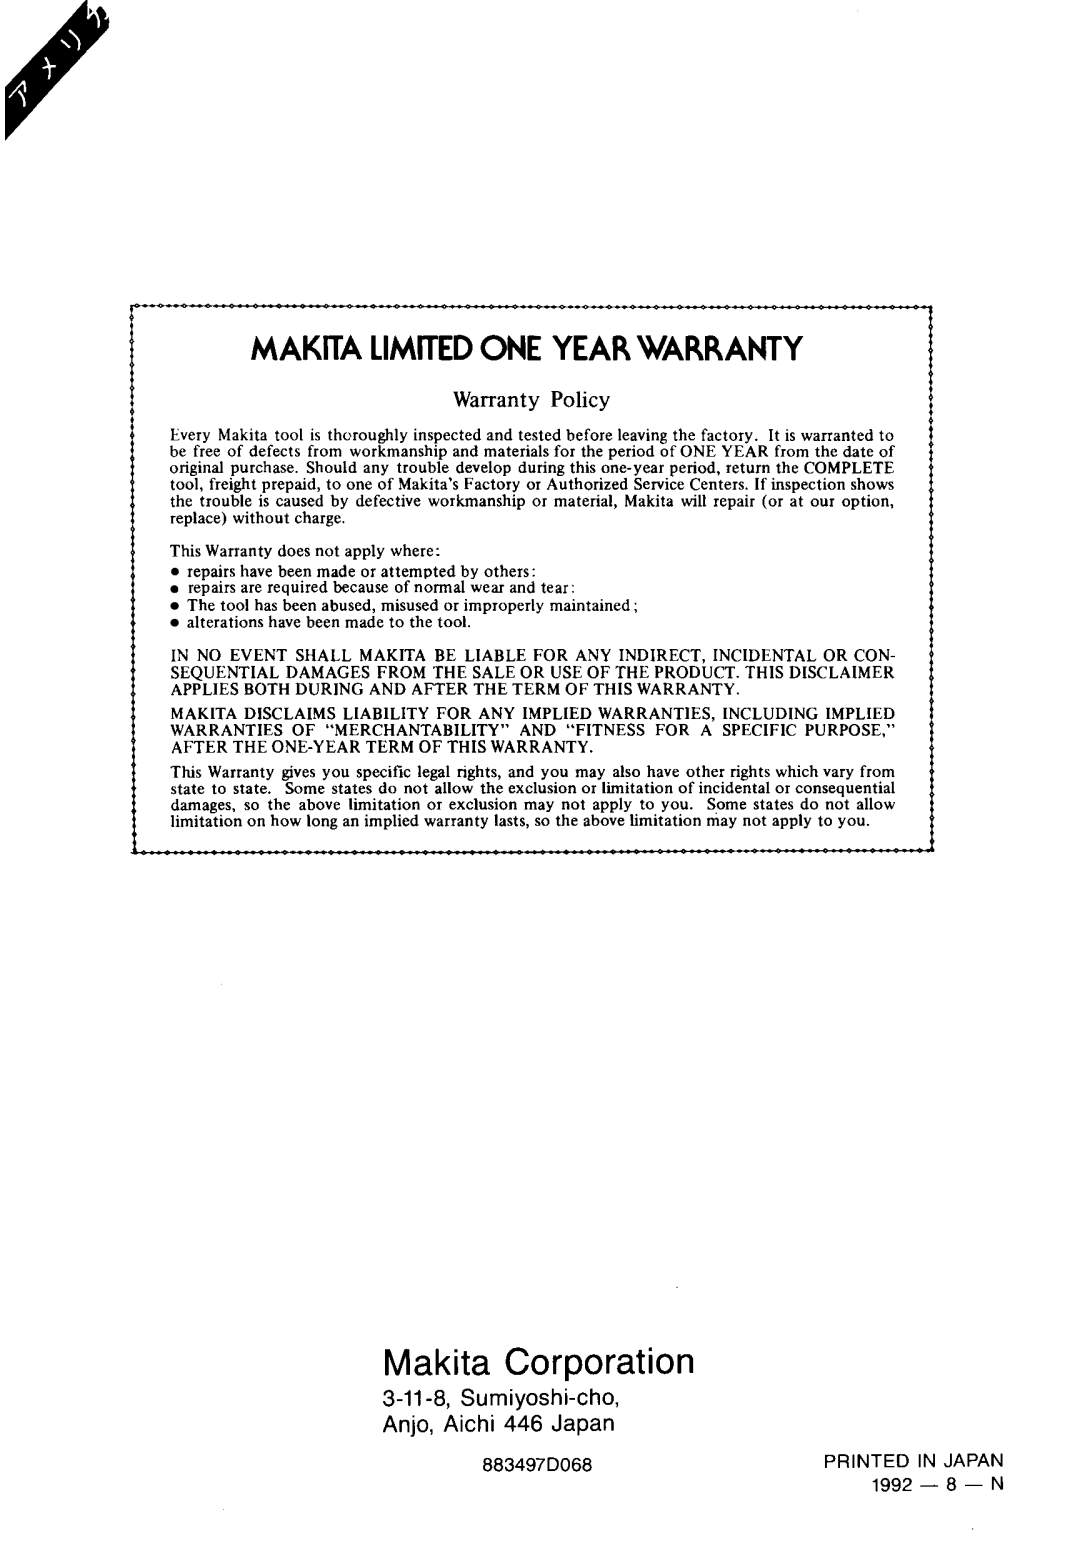 Makita 3705 instruction manual Makita Corporation, Makita Limited One Year Warranty, Warranty Policy, 883497D068 